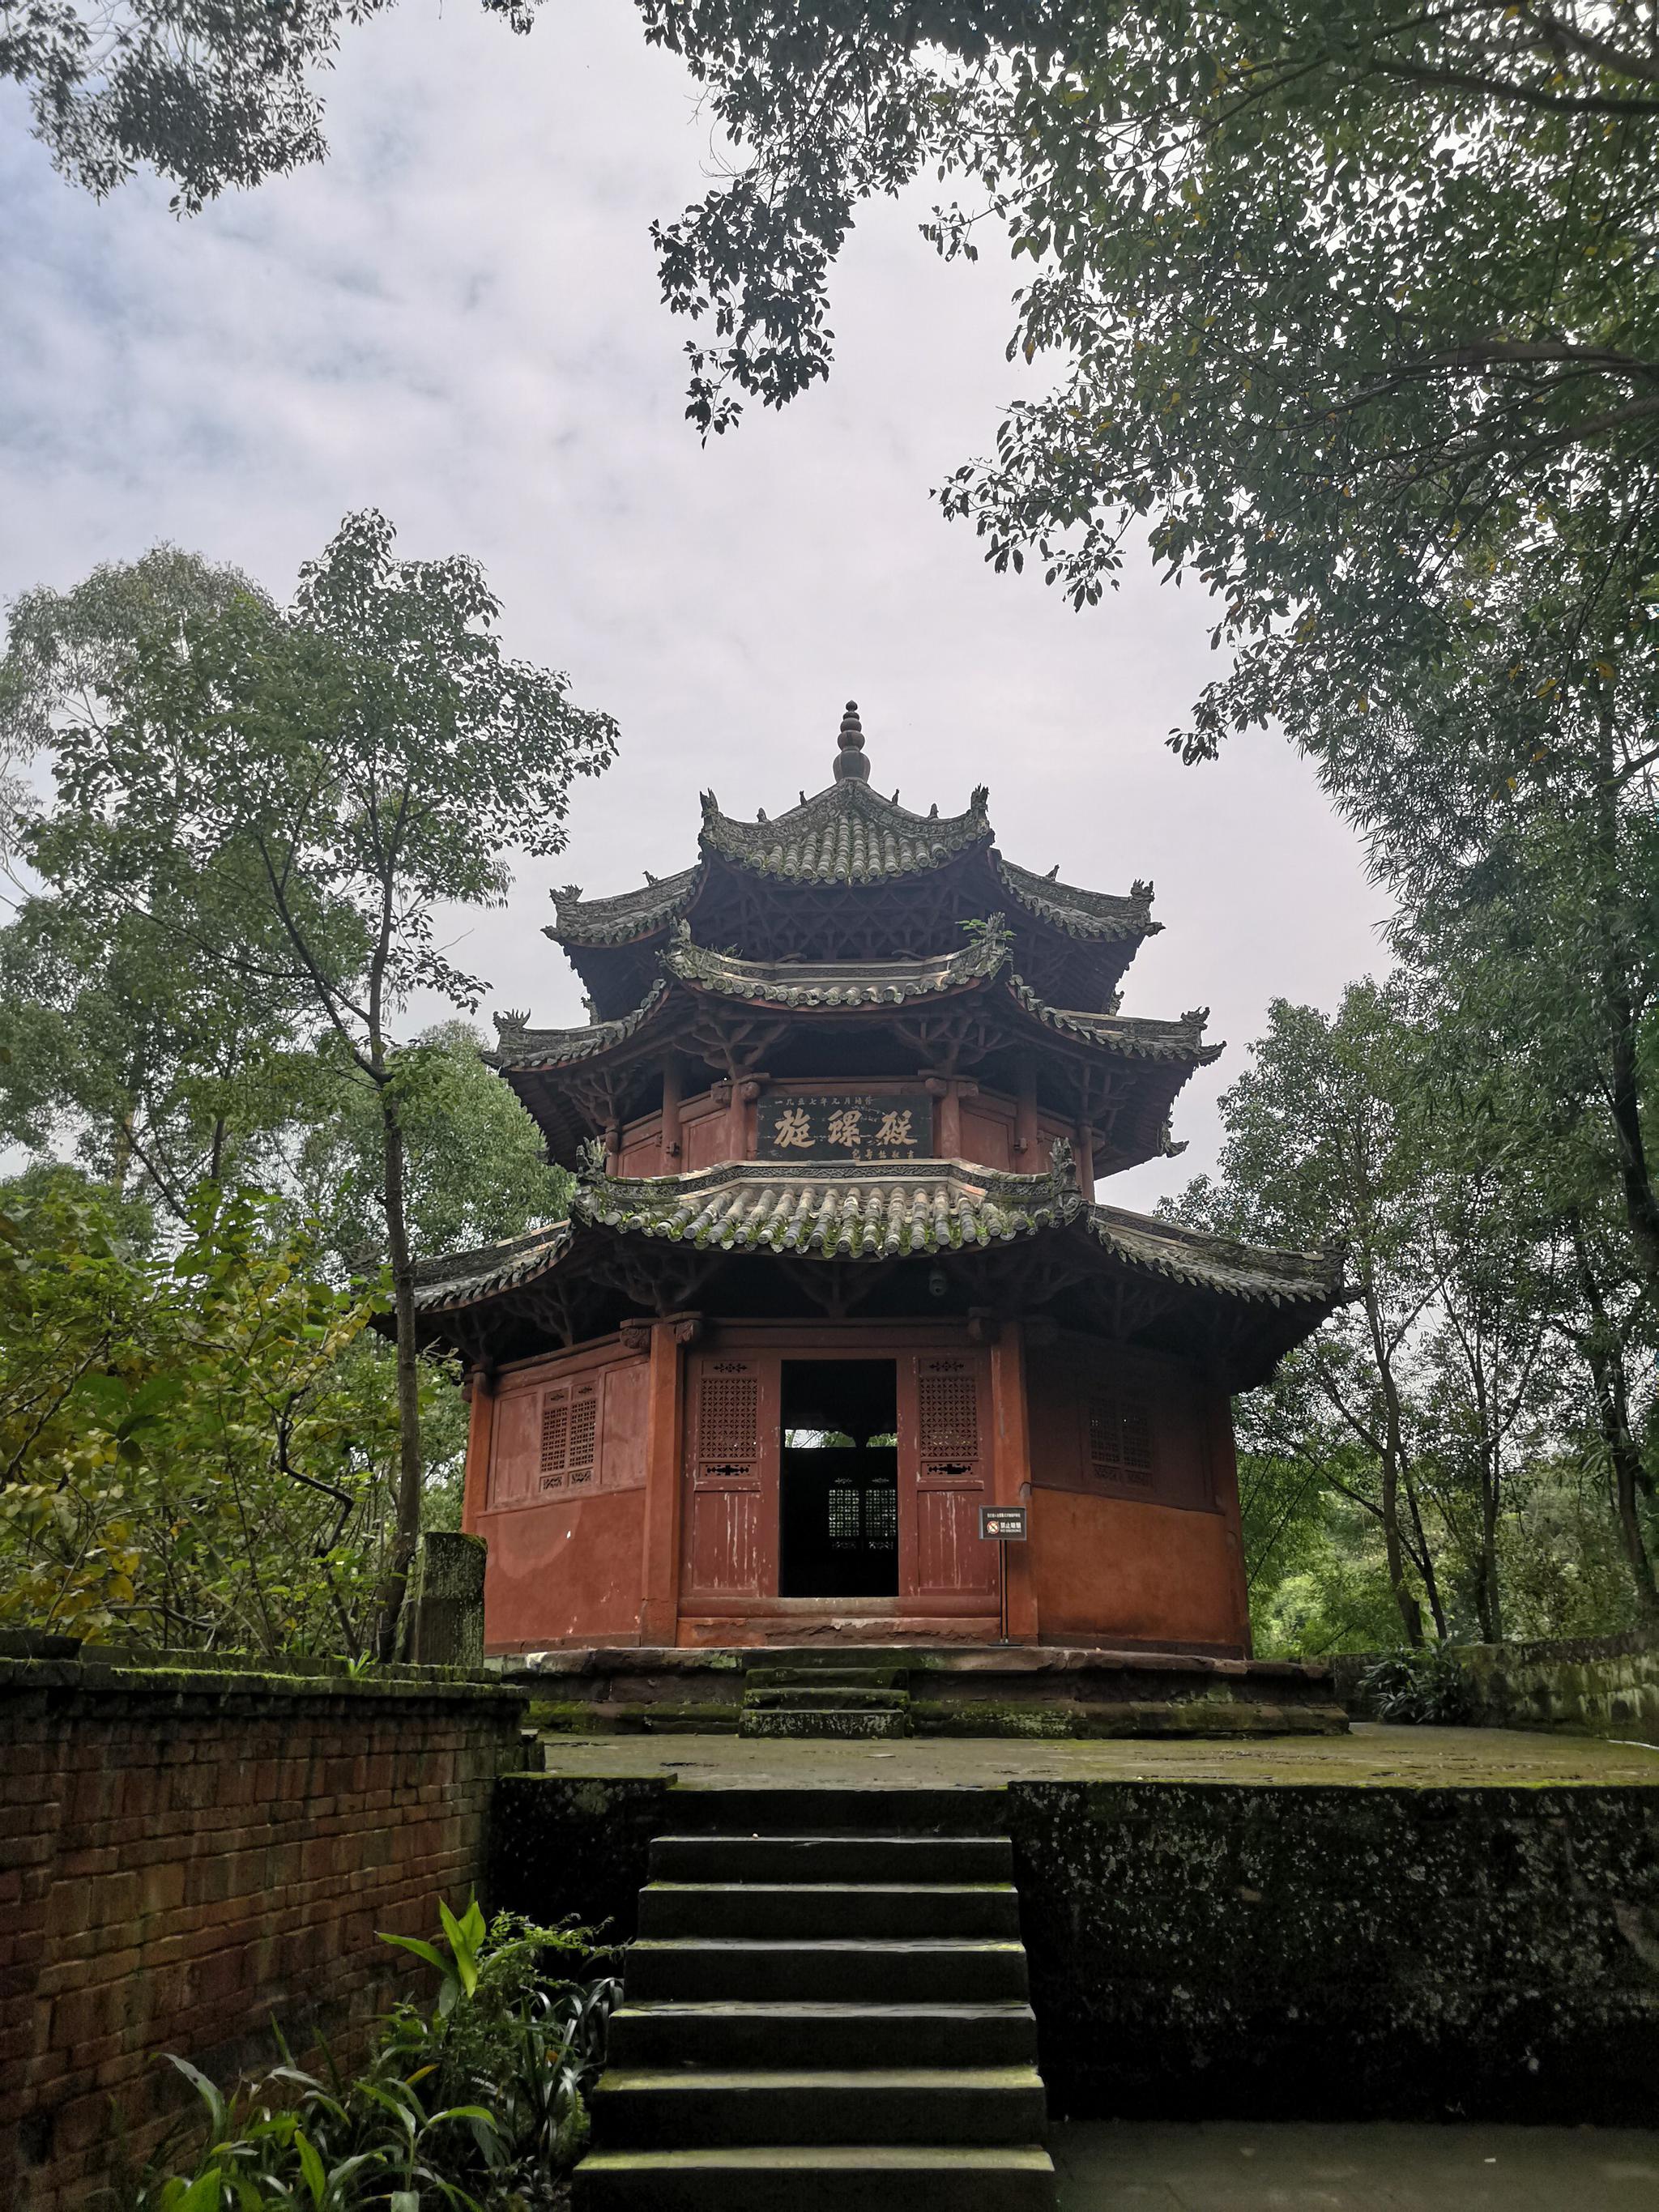 李庄古镇最大的古建筑: 禹王宫